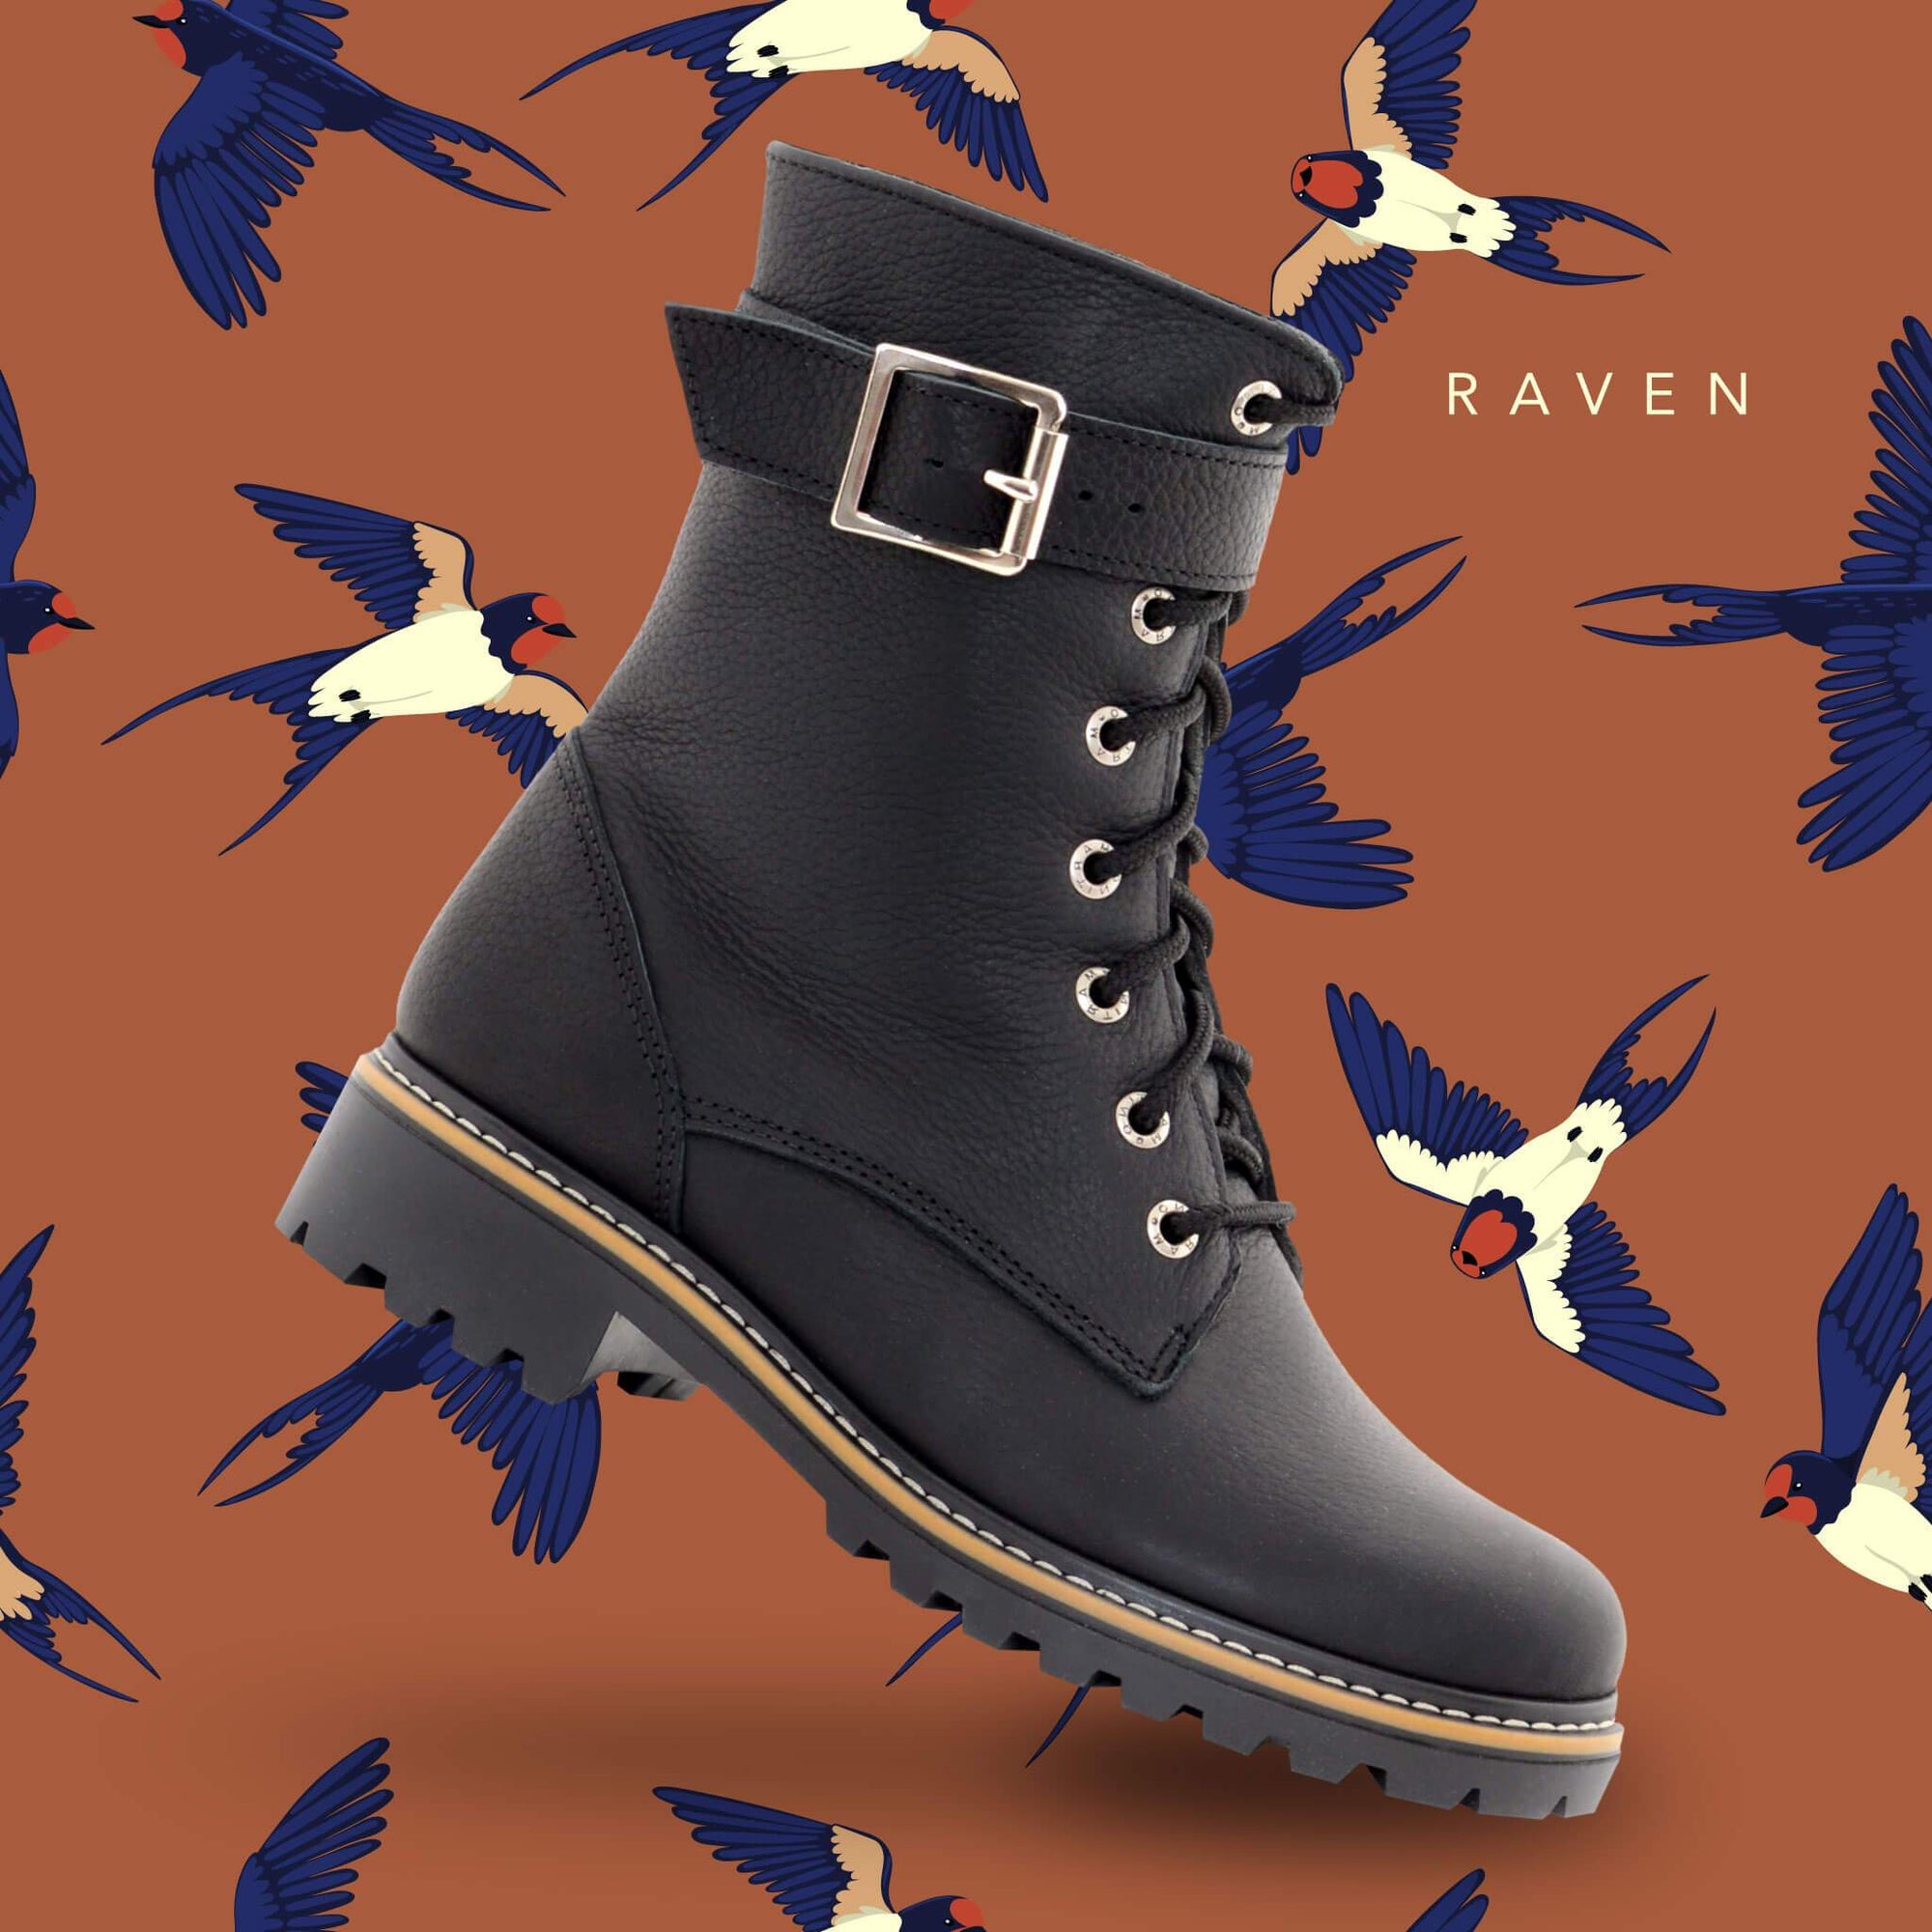 Raven 3-season boot for women - Tan